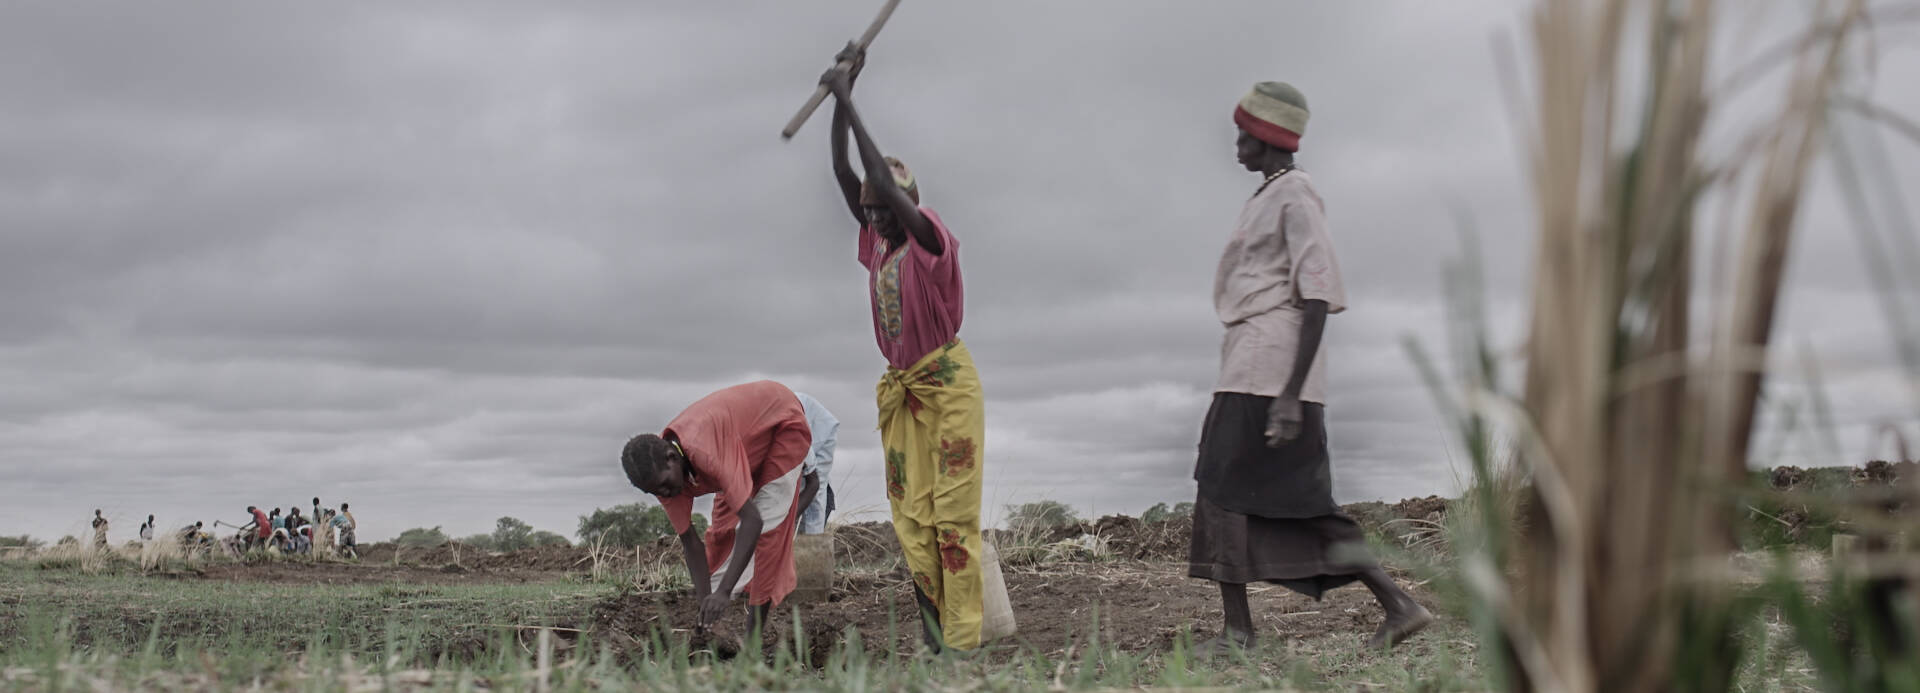 Menschen im Südsudan arbeiten auf einem Feld.